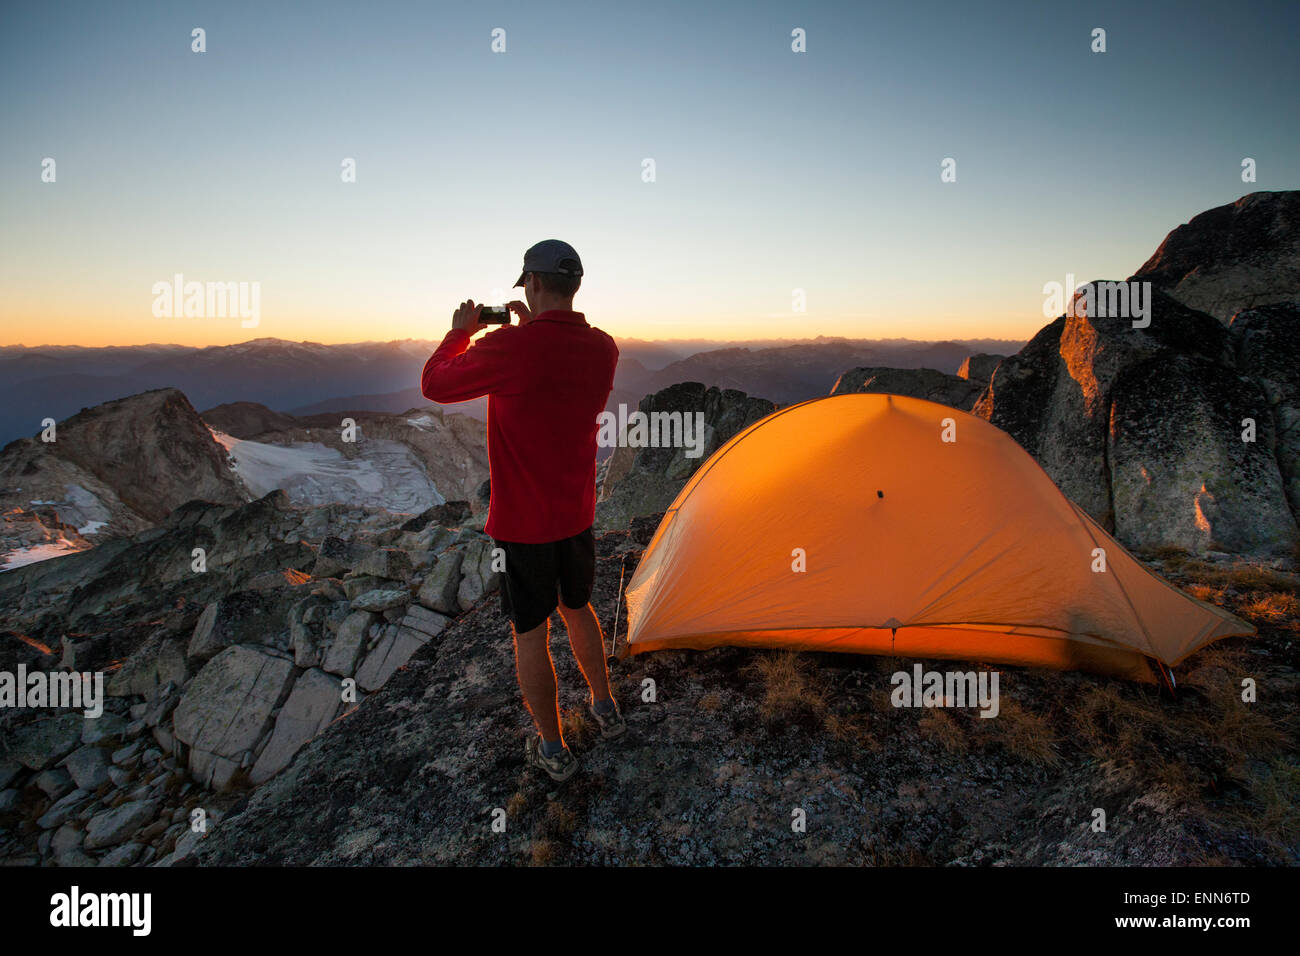 Un randonneur prend une photo du coucher de soleil avec son smartphone alors qu'il campait sur le sommet du pic de saxifrage. Banque D'Images